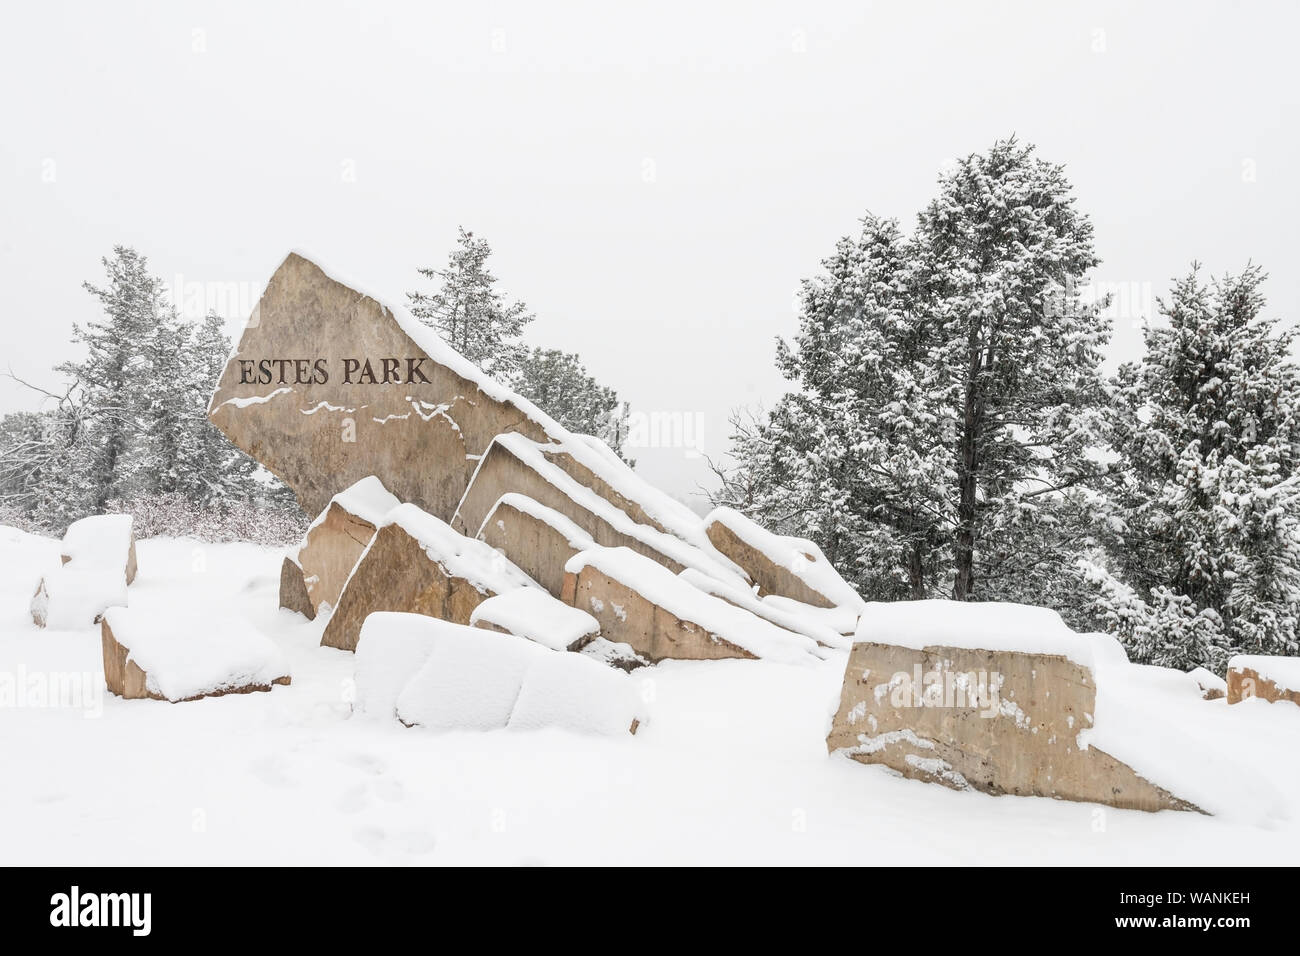 Die herzlich Willkommen Schild nach Estes Park am US-Highway 36 ist mit frischem Schnee bedeckt. Stockfoto